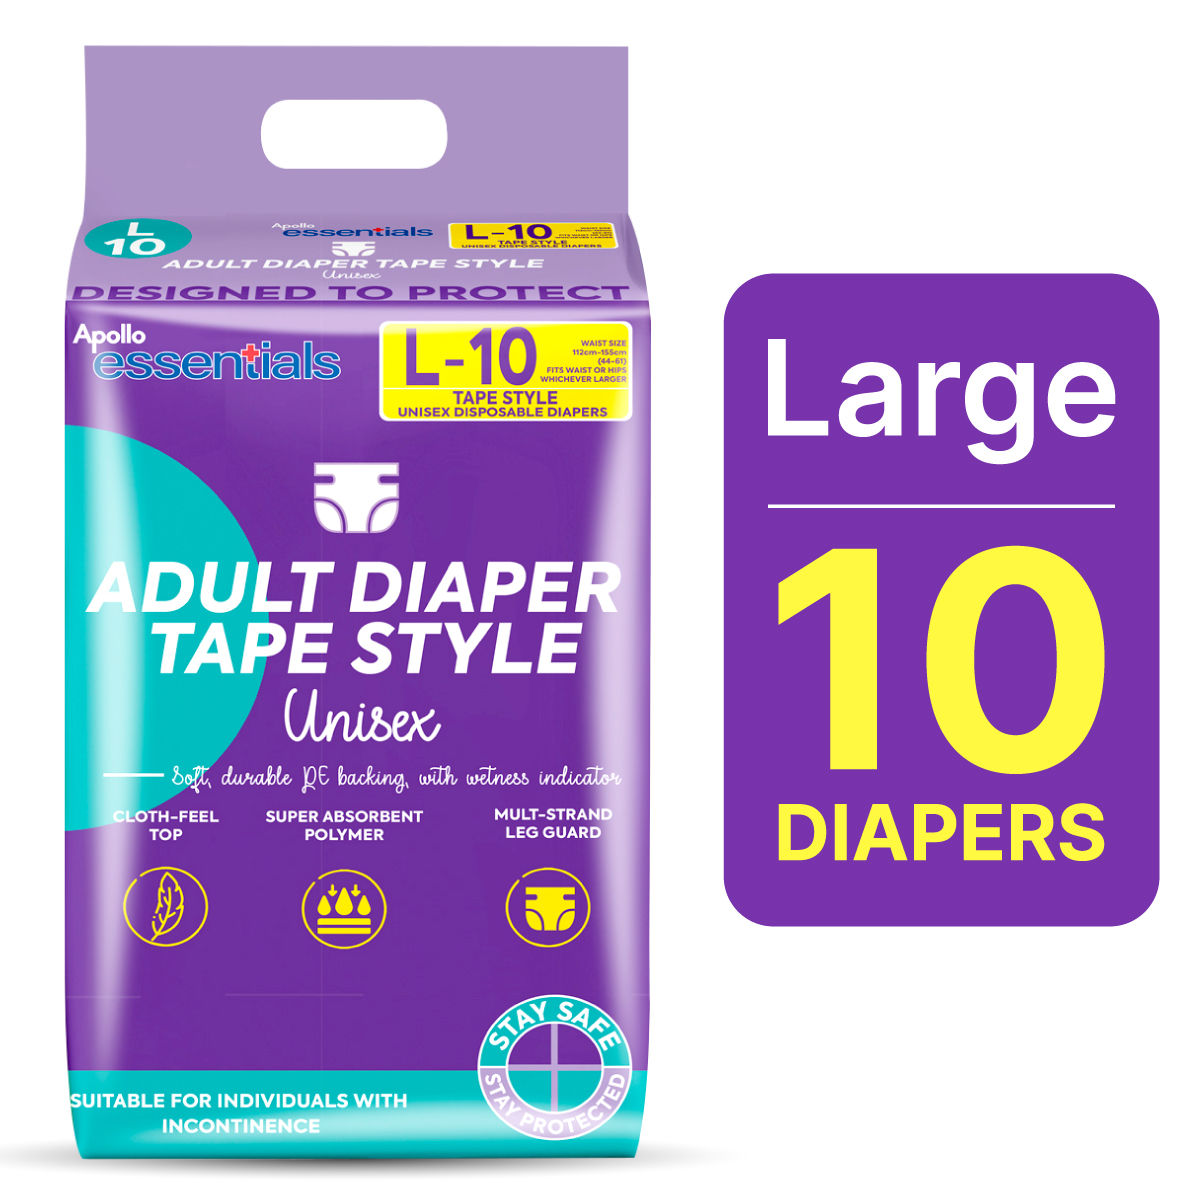 Buy Apollo Essentials Adult Diaper Tape Unisex Large, 10 Count Online